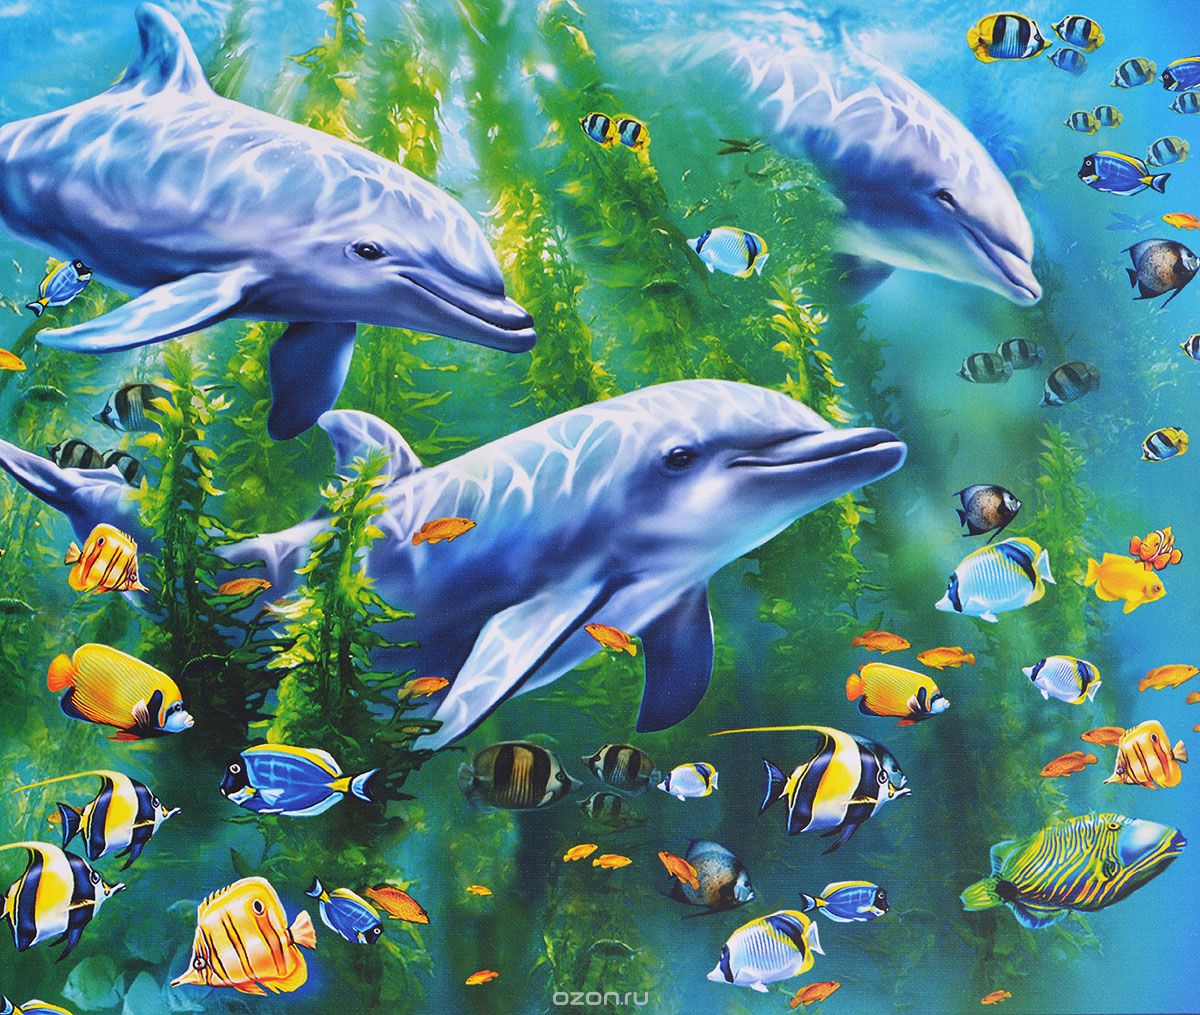 תמונה של דולפינים בים